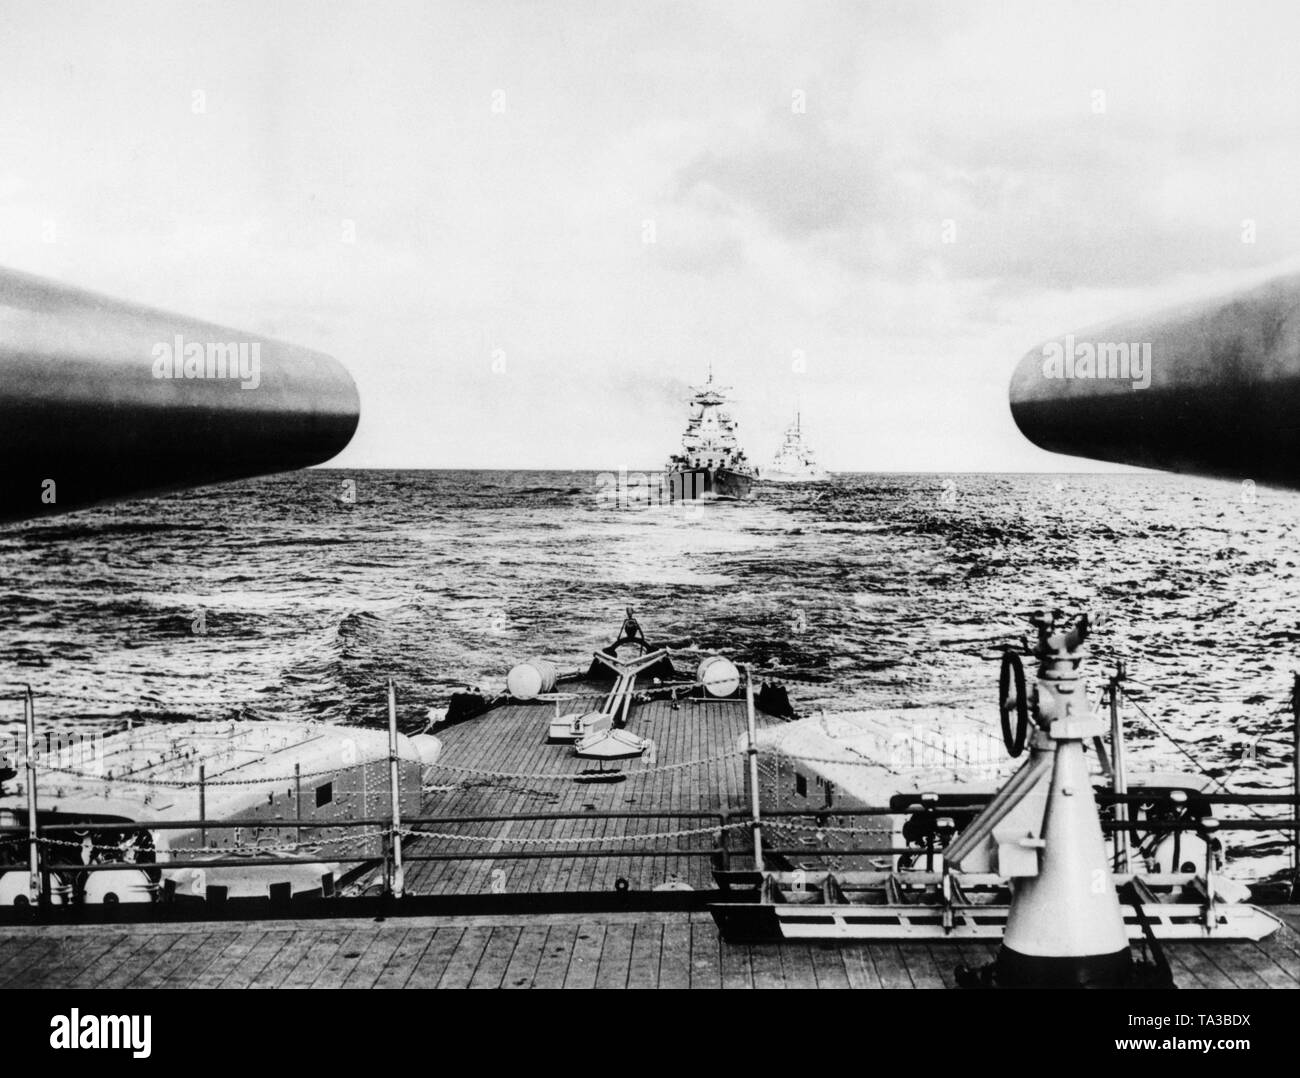 Das Bild zeigt den Krieg Schiffe der Kriegsmarine während einer Flotte Manöver auf hoher See. Es war vermutlich von Bord der Panzerkreuzer "Admiral Graf Spee", in der Mitte ist die gepanzerten Schiff "Admiral Scheer" hinter dem Schlachtschiff "Gneisenau" übernommen. Stockfoto